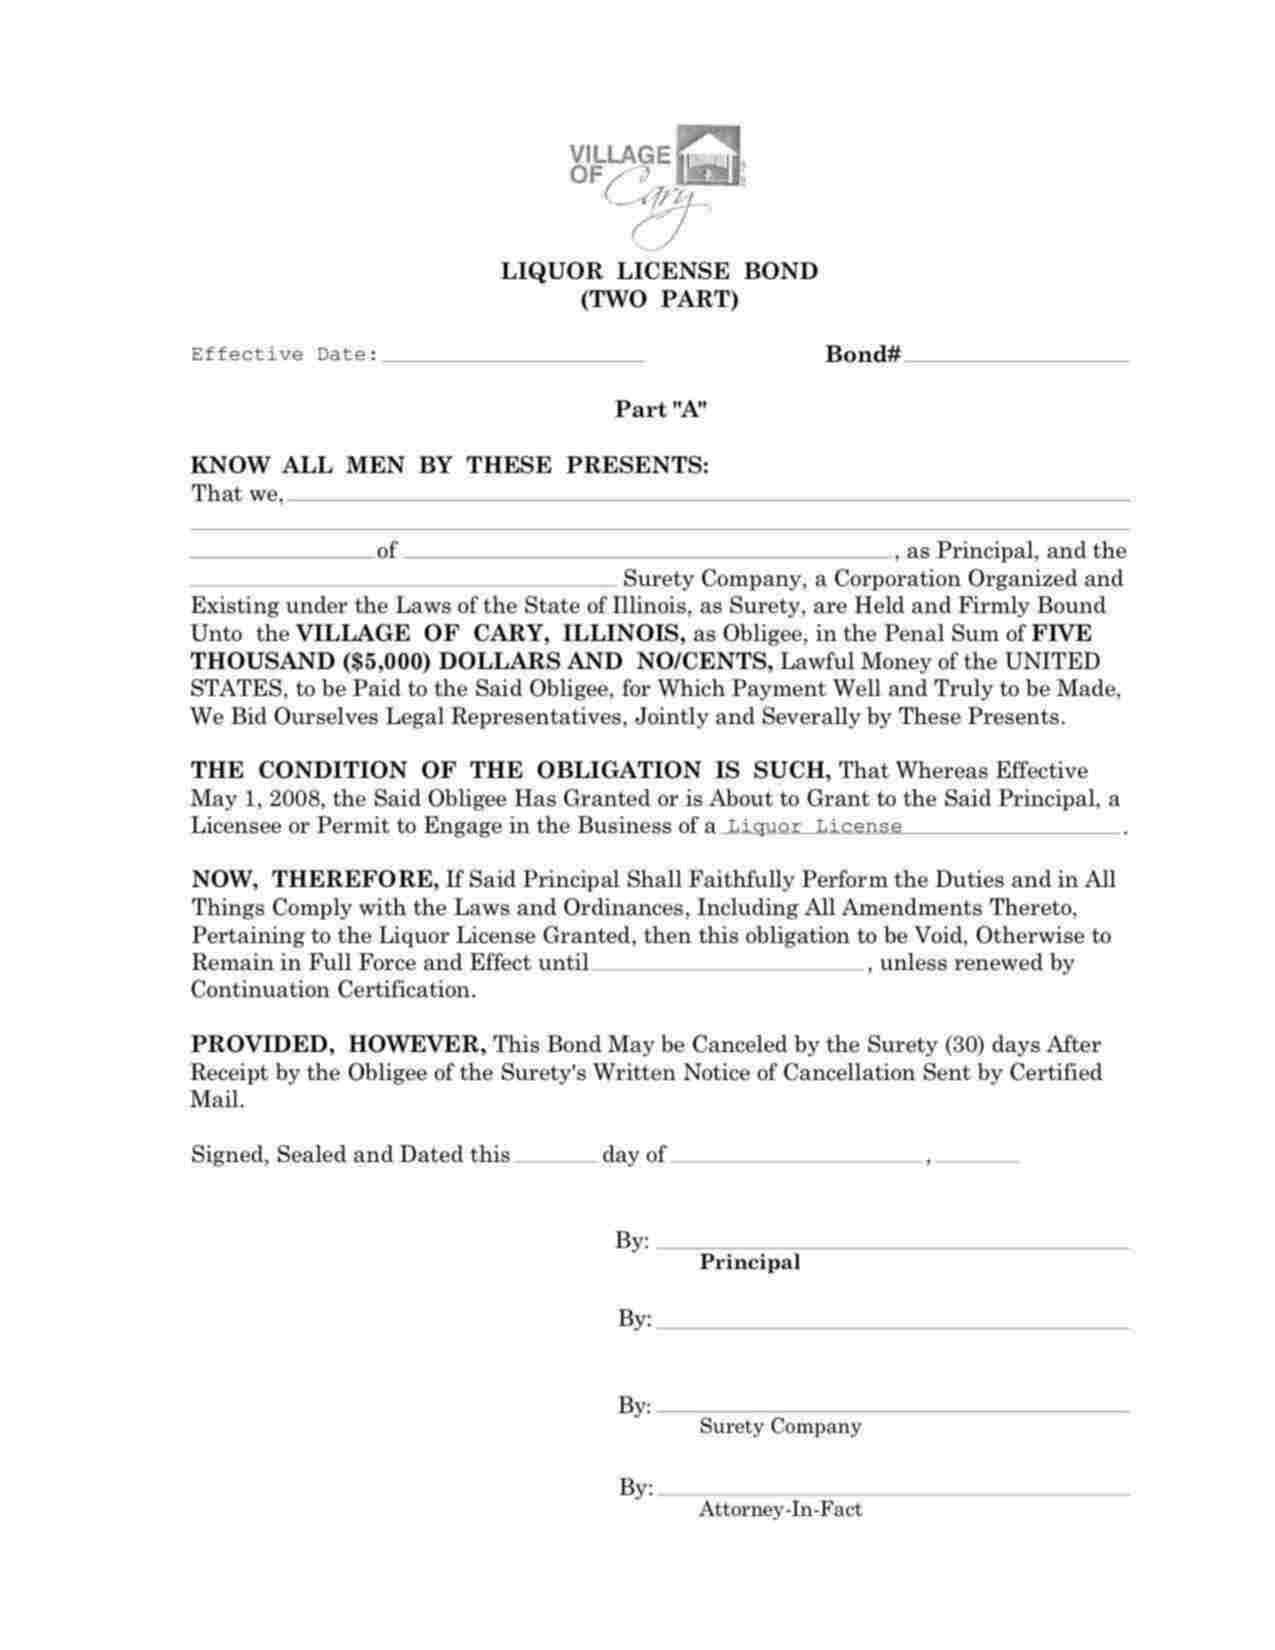 Illinois Liquor License (Two Part) Bond Form